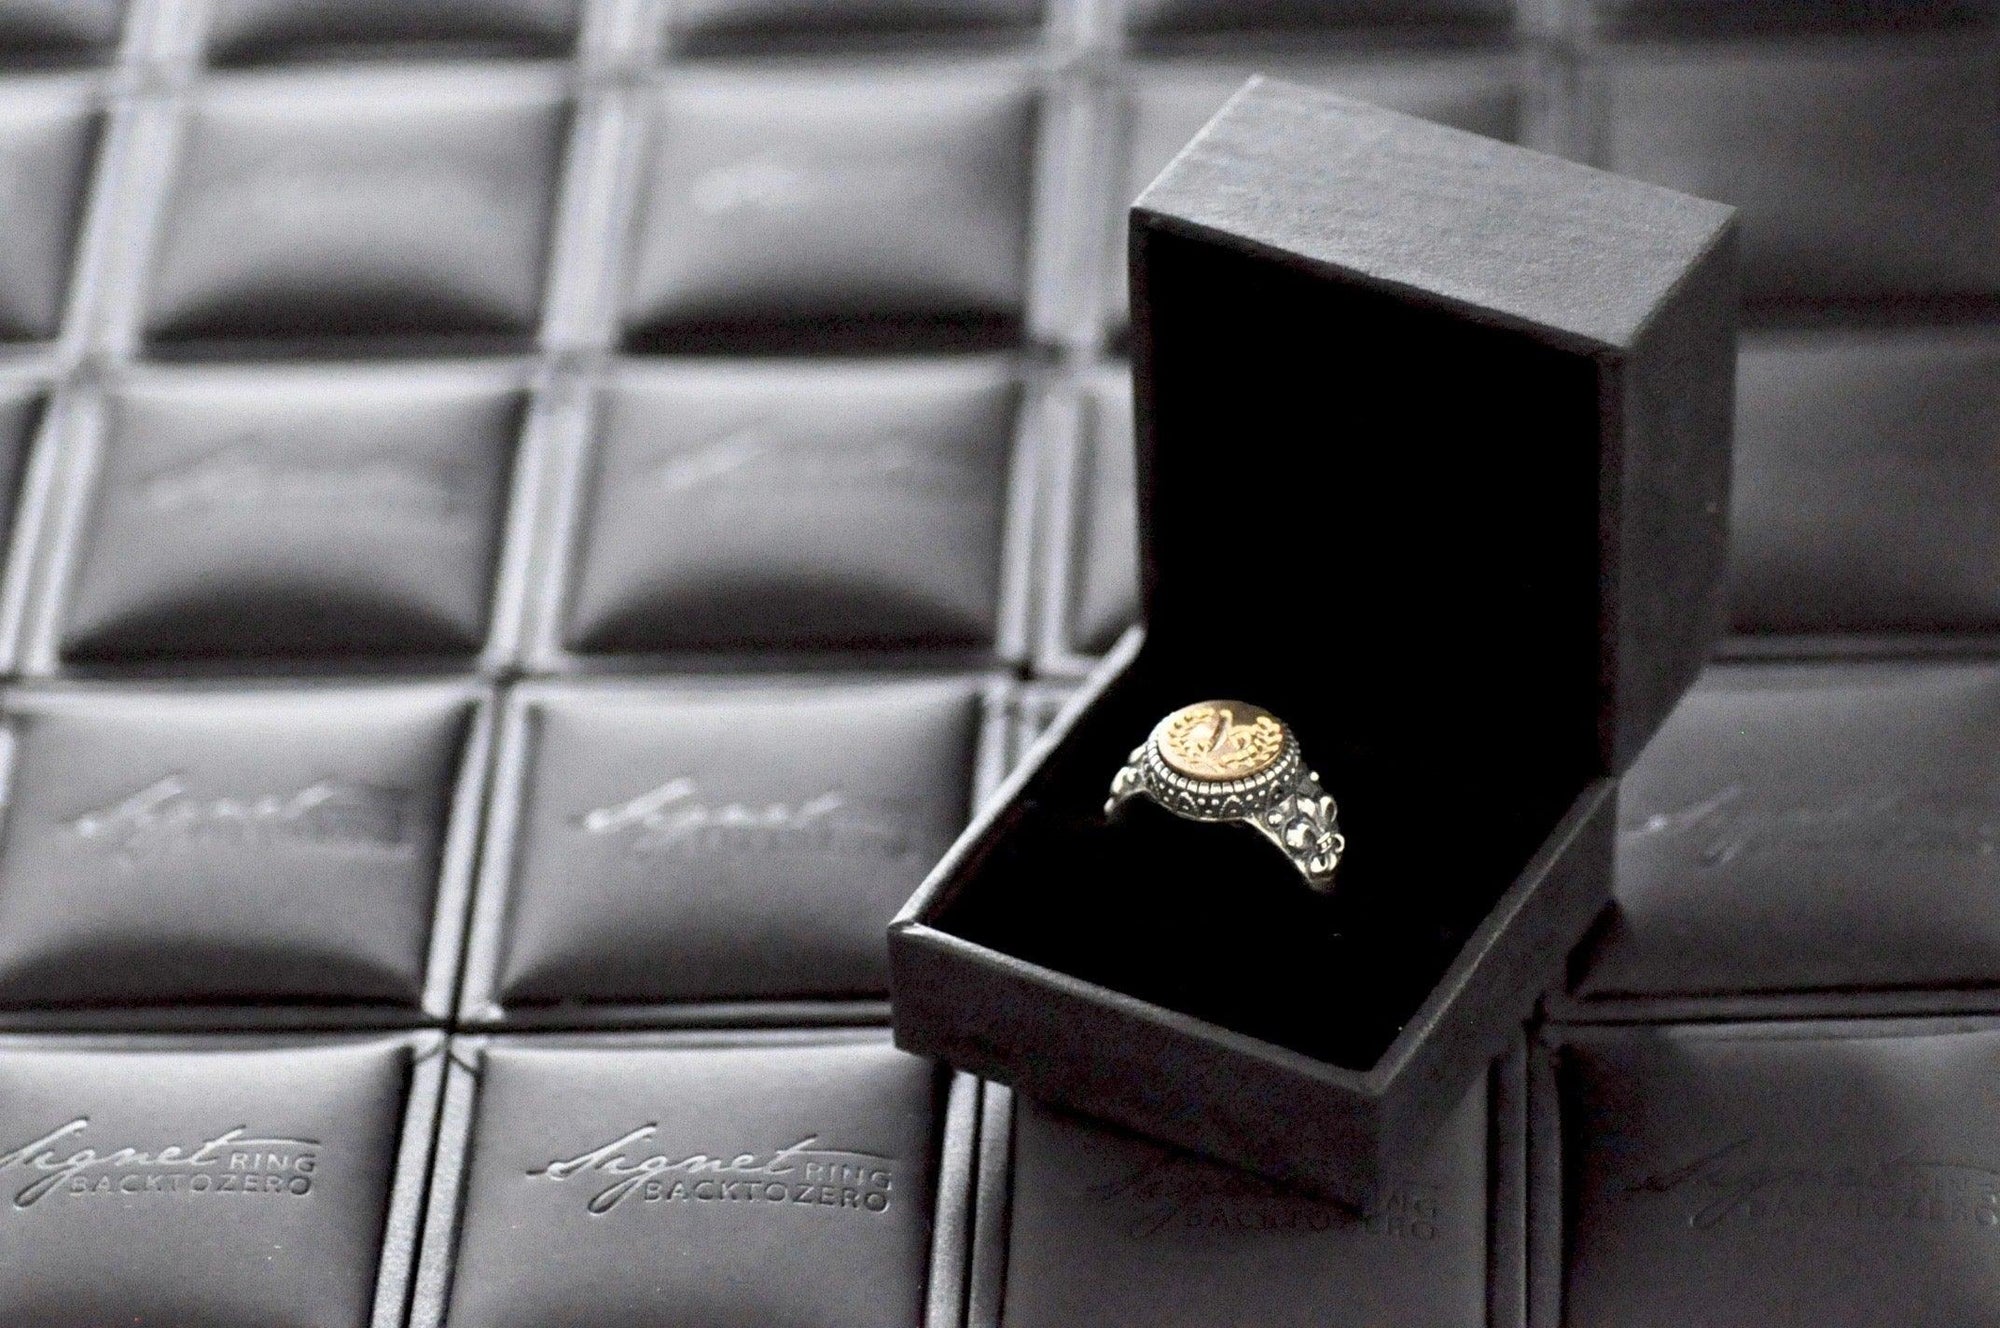 Cross Signet Ring - Backtozero B20 - 12l, 12mm, 12mm ring, Cross, Deco, Decorative, her, lace, ring, signet ring, size 10, size 7, size 8, size 9, Victorian, wax seal, wax seal ring